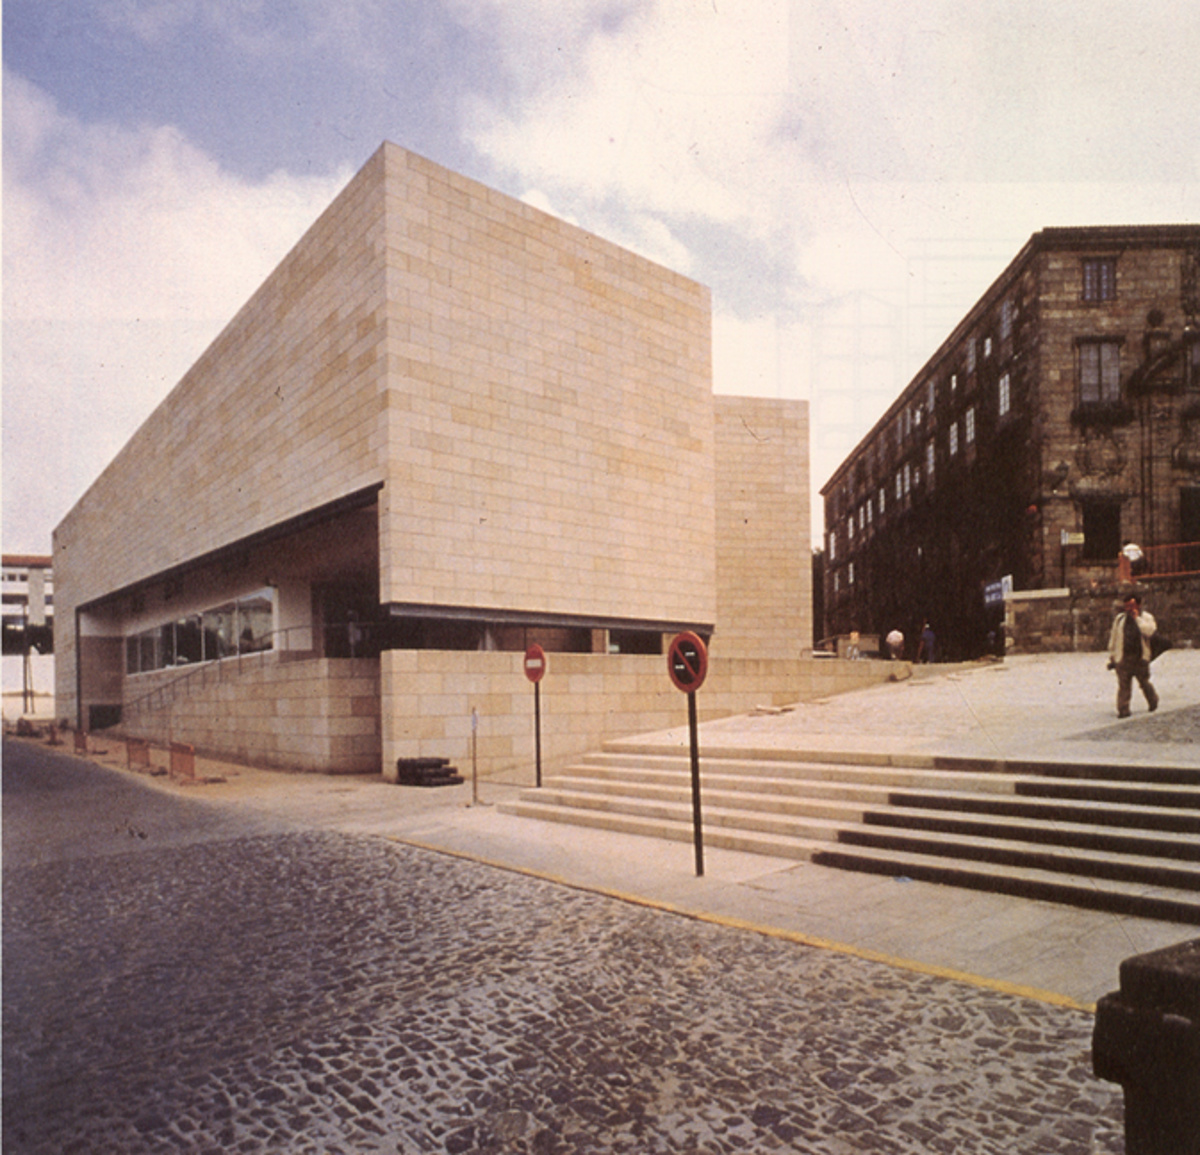  Galician Centre of Contemporary Art